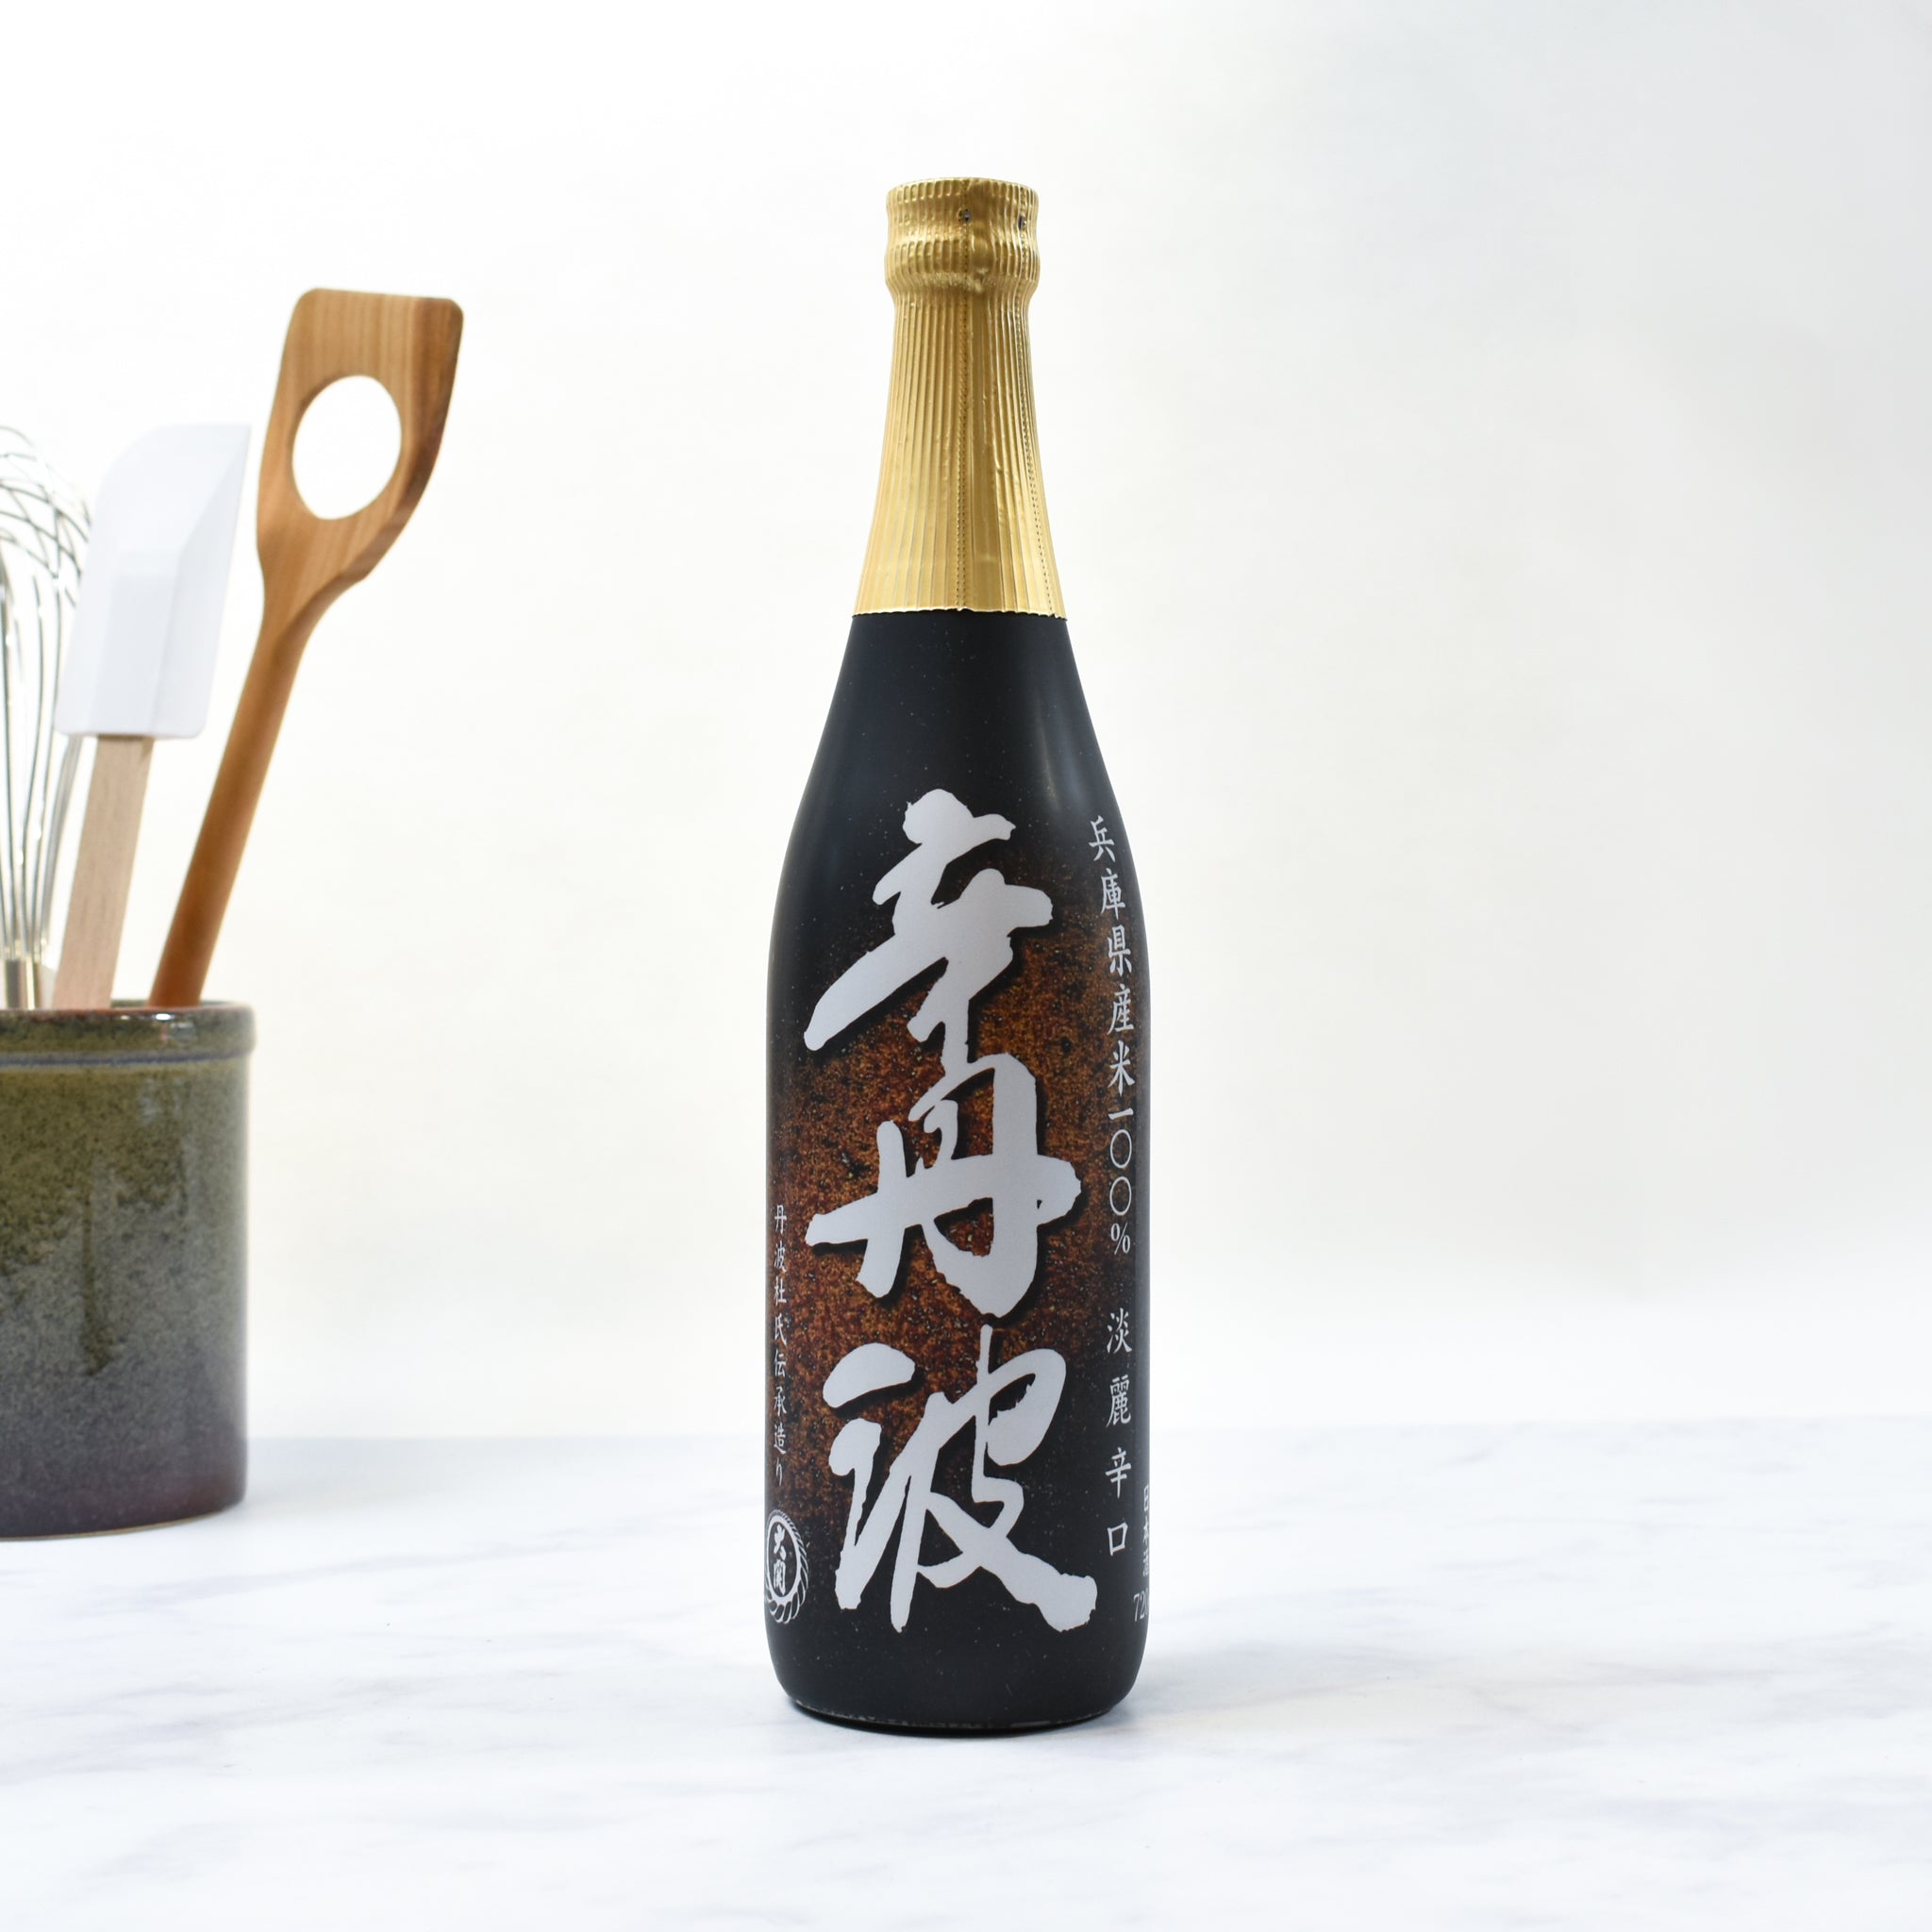 Ozeki Karatamba Sake 720ml Ingredients Drinks Alcohol Japanese Food Lifestyle Packaging Shot